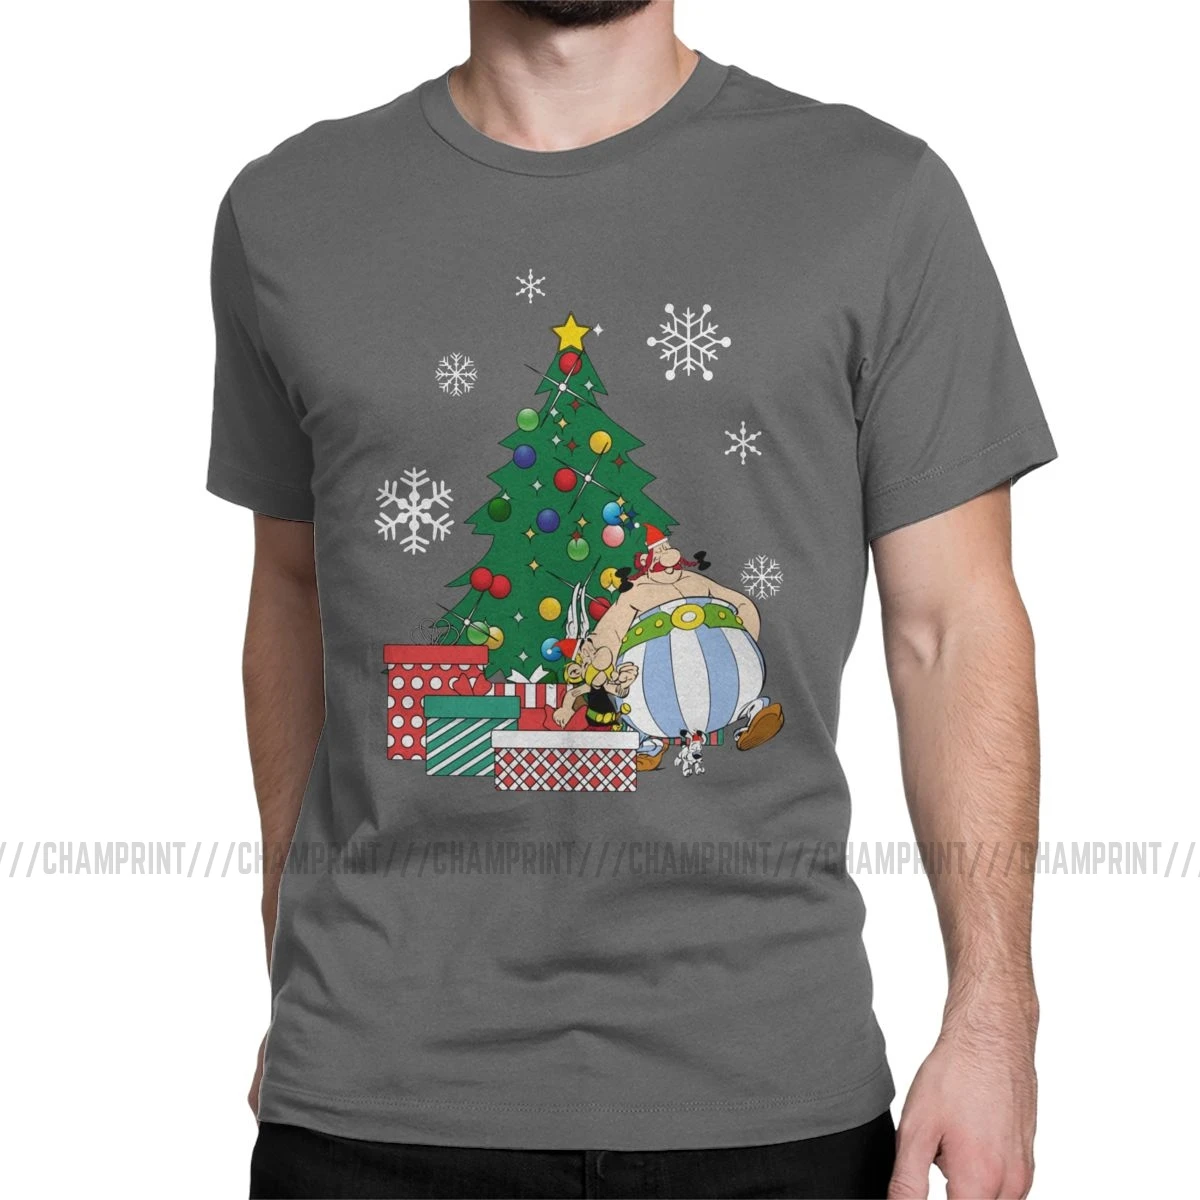 Мужская футболка Астерикс и Обеликс вокруг рождественской елки, хлопковые топы Getafix Dogmatix, футболка с коротким рукавом, подарок на день рождения, футболки - Цвет: Темно-серый